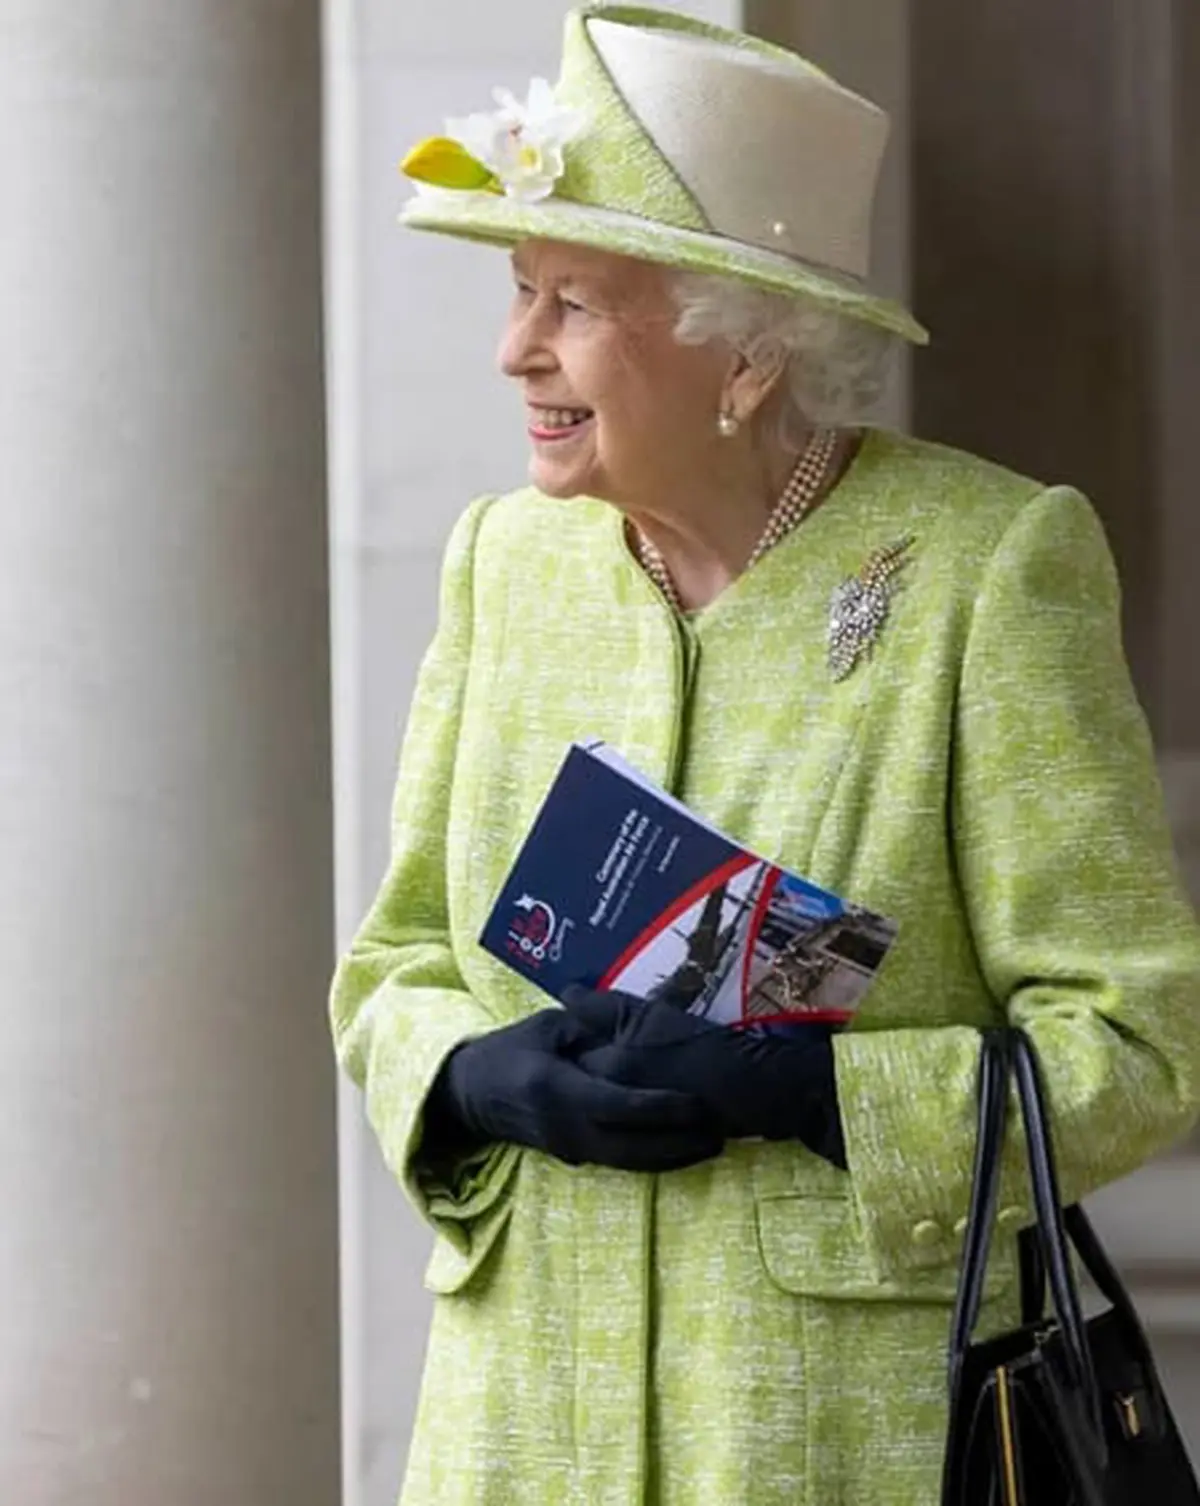 ملکه انگلیس بدون ماسک در یک مراسم عمومی حضور پیدا کرد